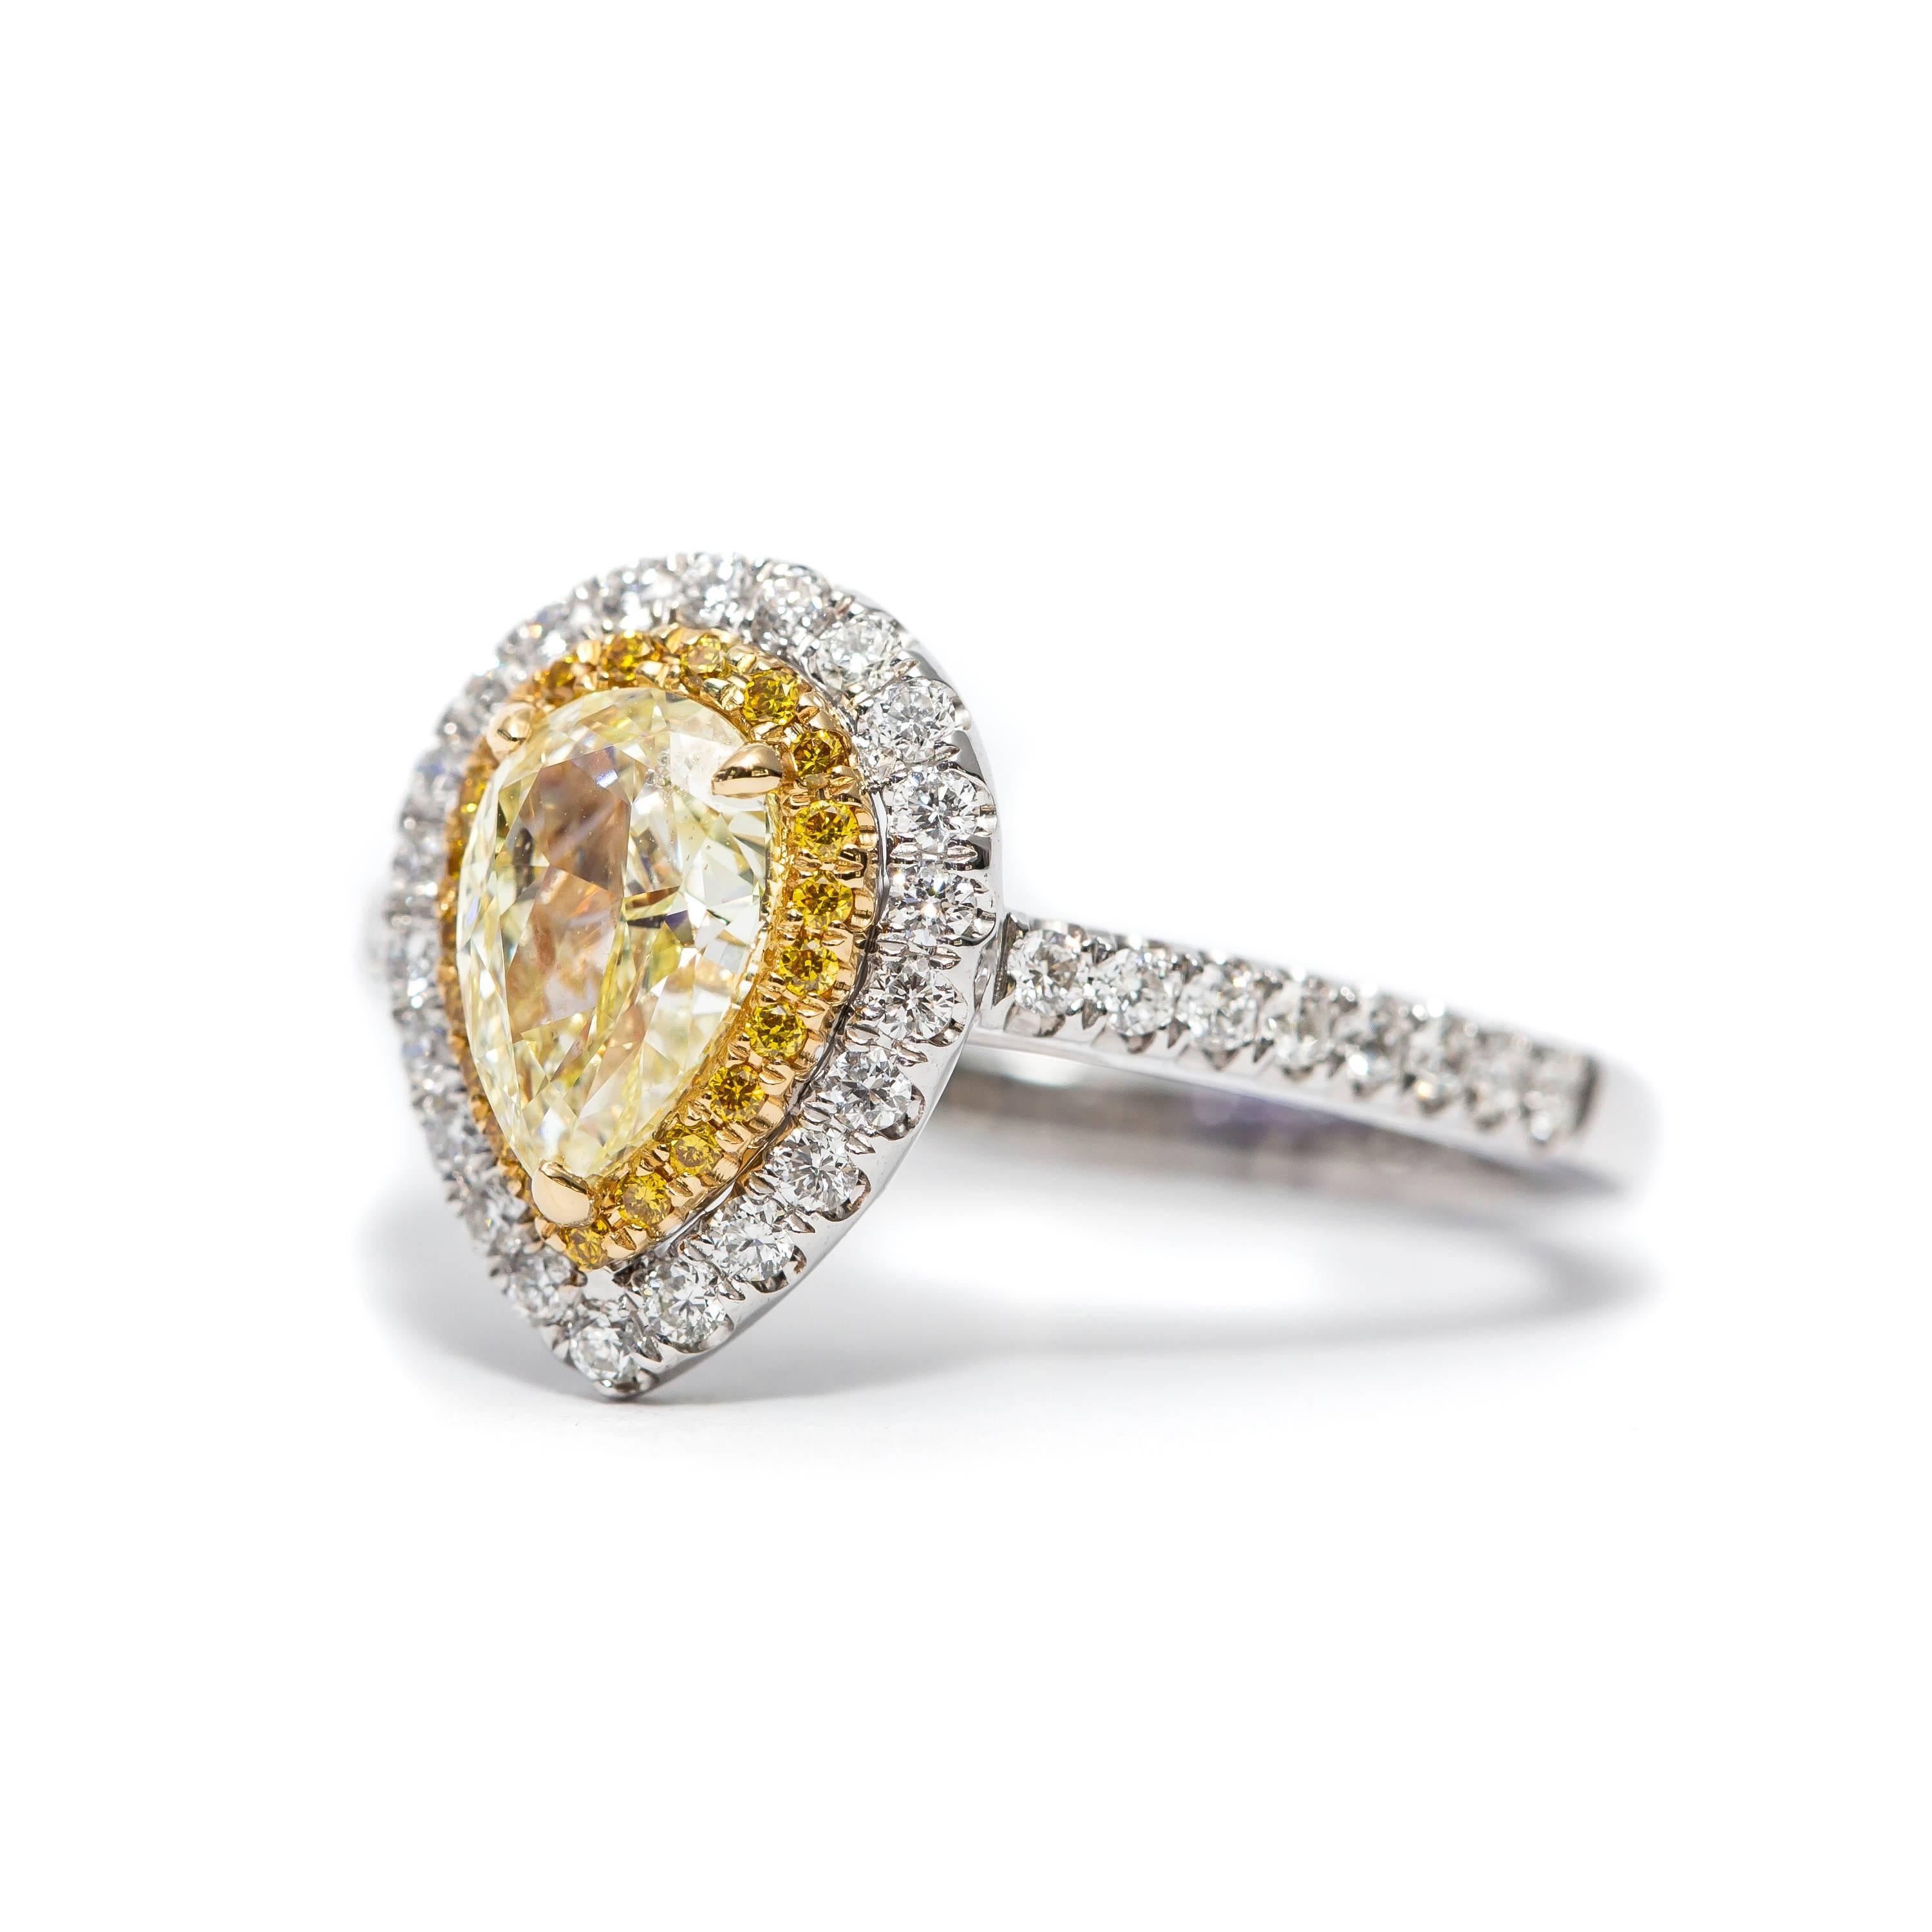 Diese atemberaubende maßgeschneiderte GIA zertifiziert 0,87 Karat natürlichen Fancy Light Yellow Pear Shaped Diamond, die in der Mitte des Rings mit Double Halo gesetzt ist, die innere Halo verfügt über 0,08 Karat Runde Fancy Yellow Diamanten mit